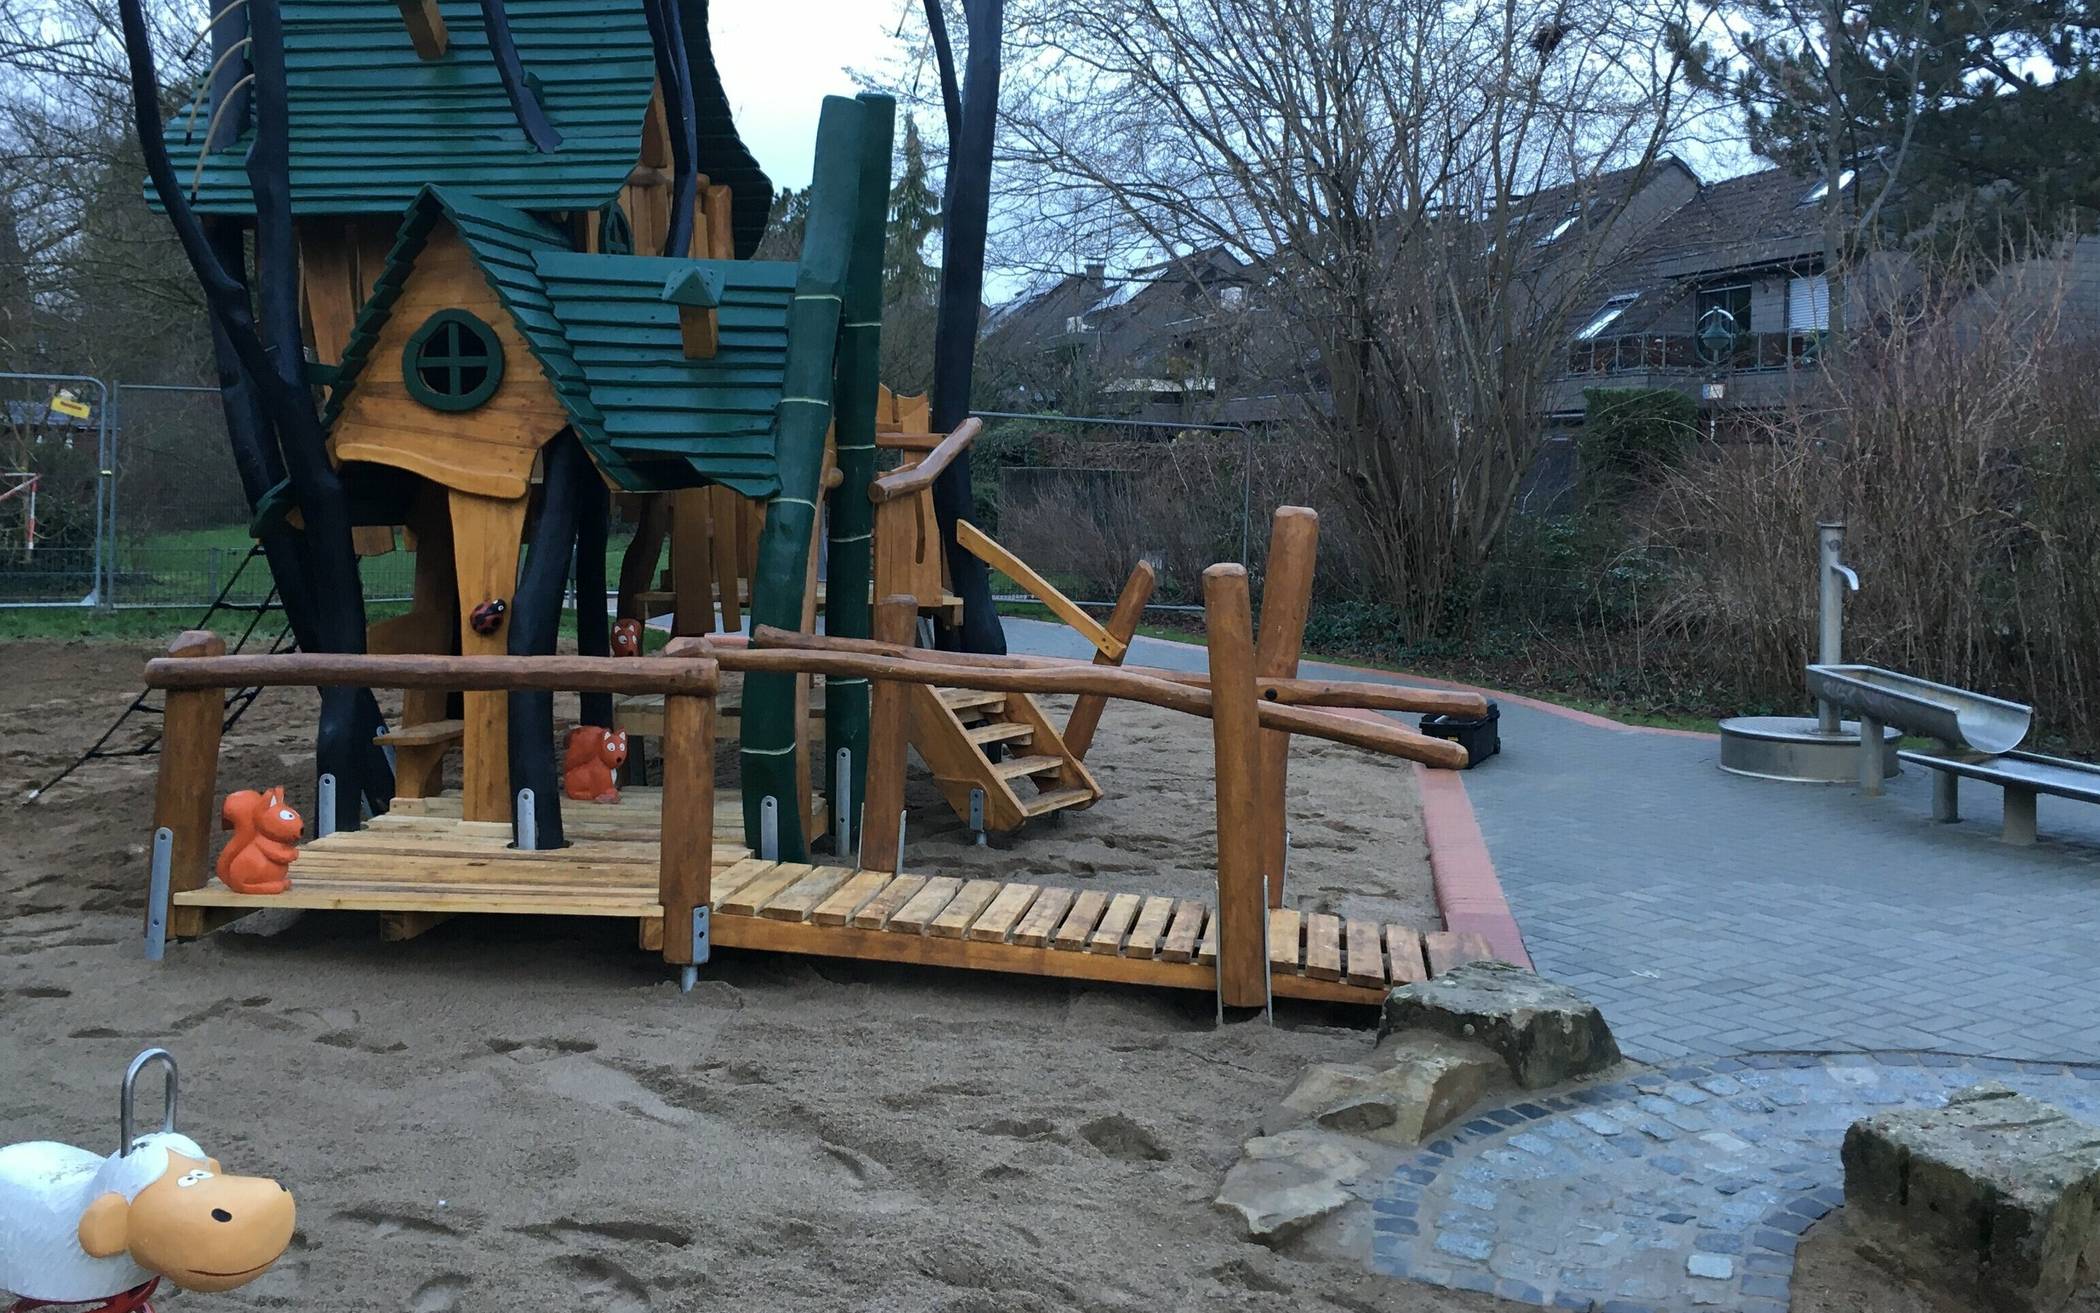  Der Kinderspielplatz an der Elsa-Brändström-Straße in Hellerhof ist fertig saniert.  